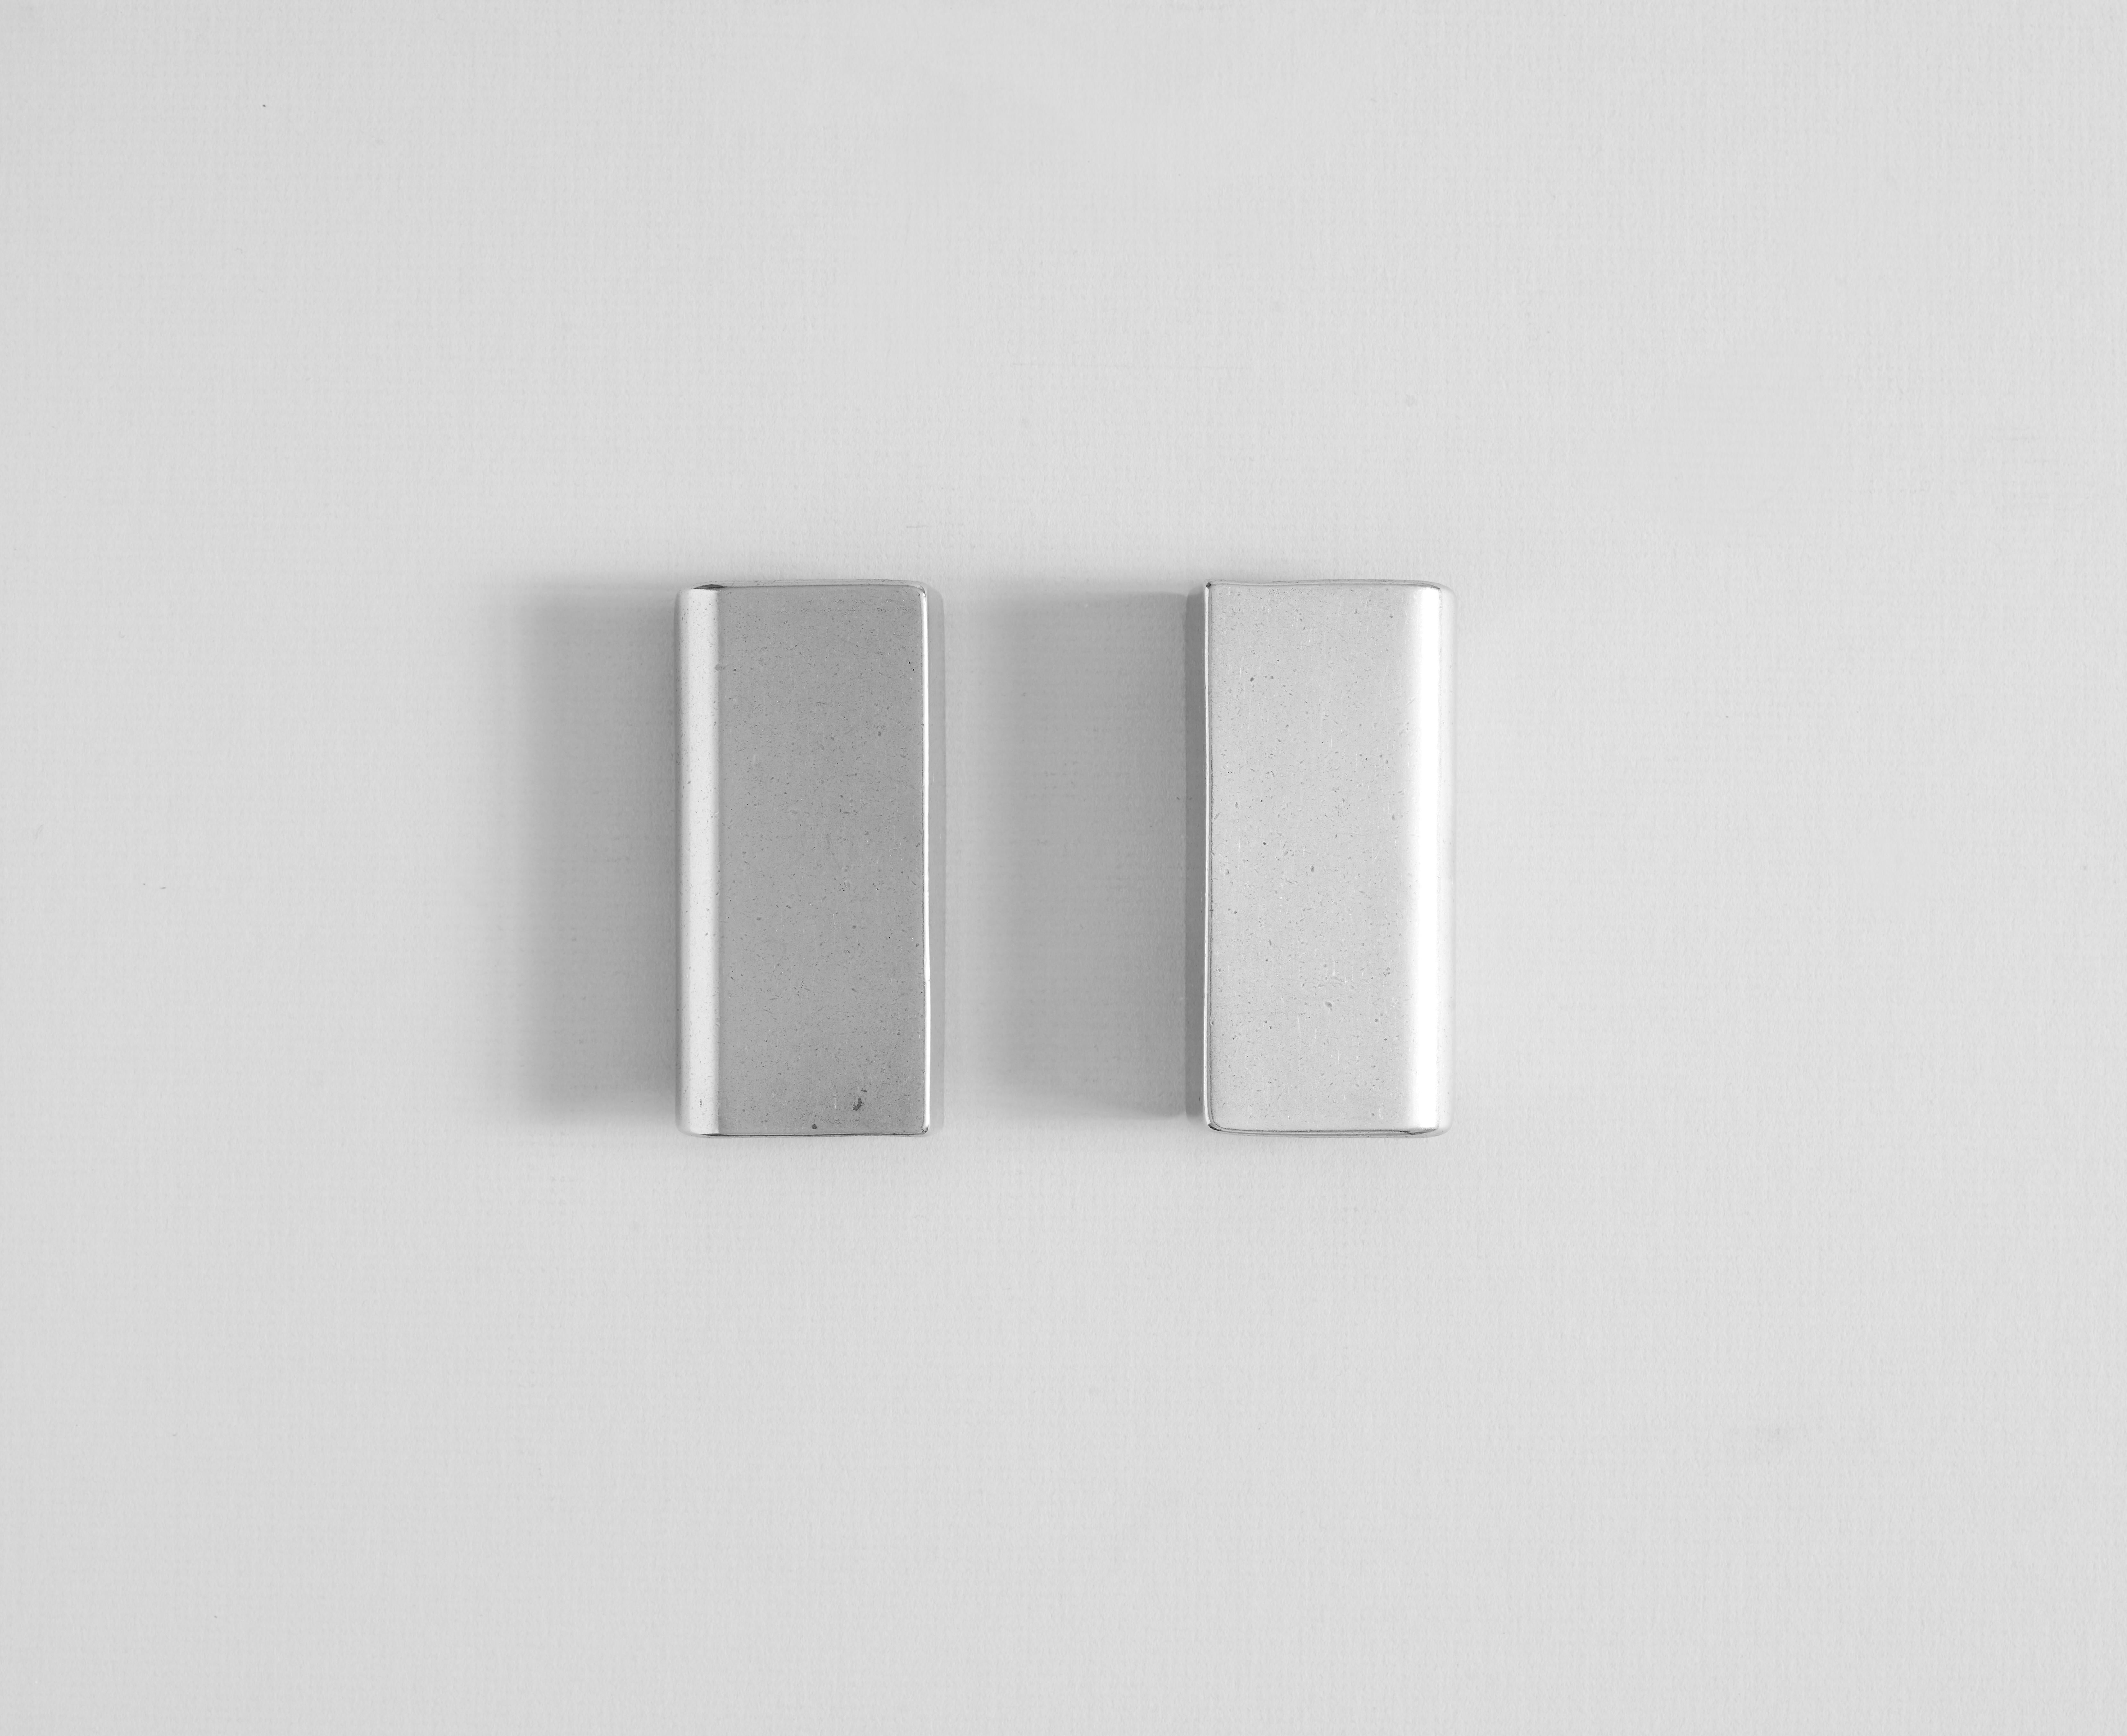 Ensemble de 2 mini poignées en aluminium par Henry Wilson
Dimensions : L 5 x P 2 x H 9 cm : L 5 x D 2 x H 9 cm
Matériaux : Aluminium

Poignée de tirage en aluminium pour s'adapter à l'armoire.

Chaque pièce est moulée au sable et finie au